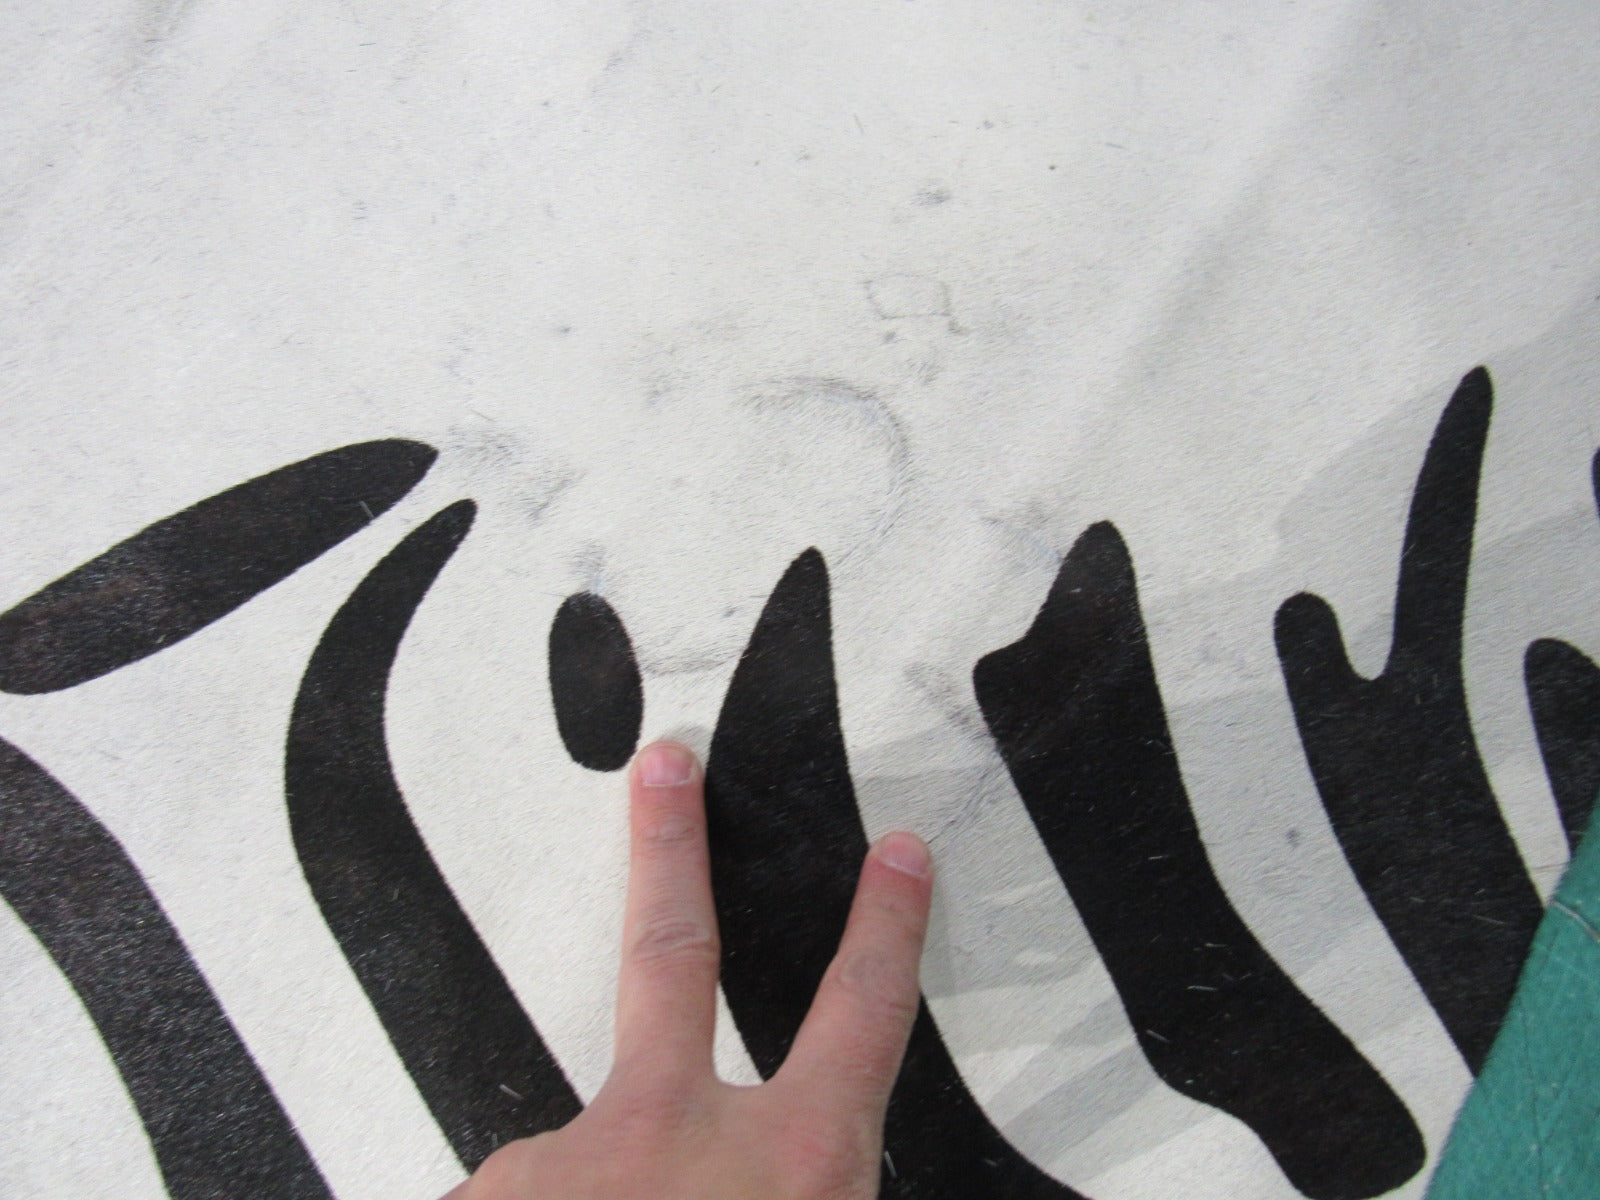 Zebra Print Cowhide Rug Size: 6' X 6' Black/White Zebra Cowhide Rug O-821